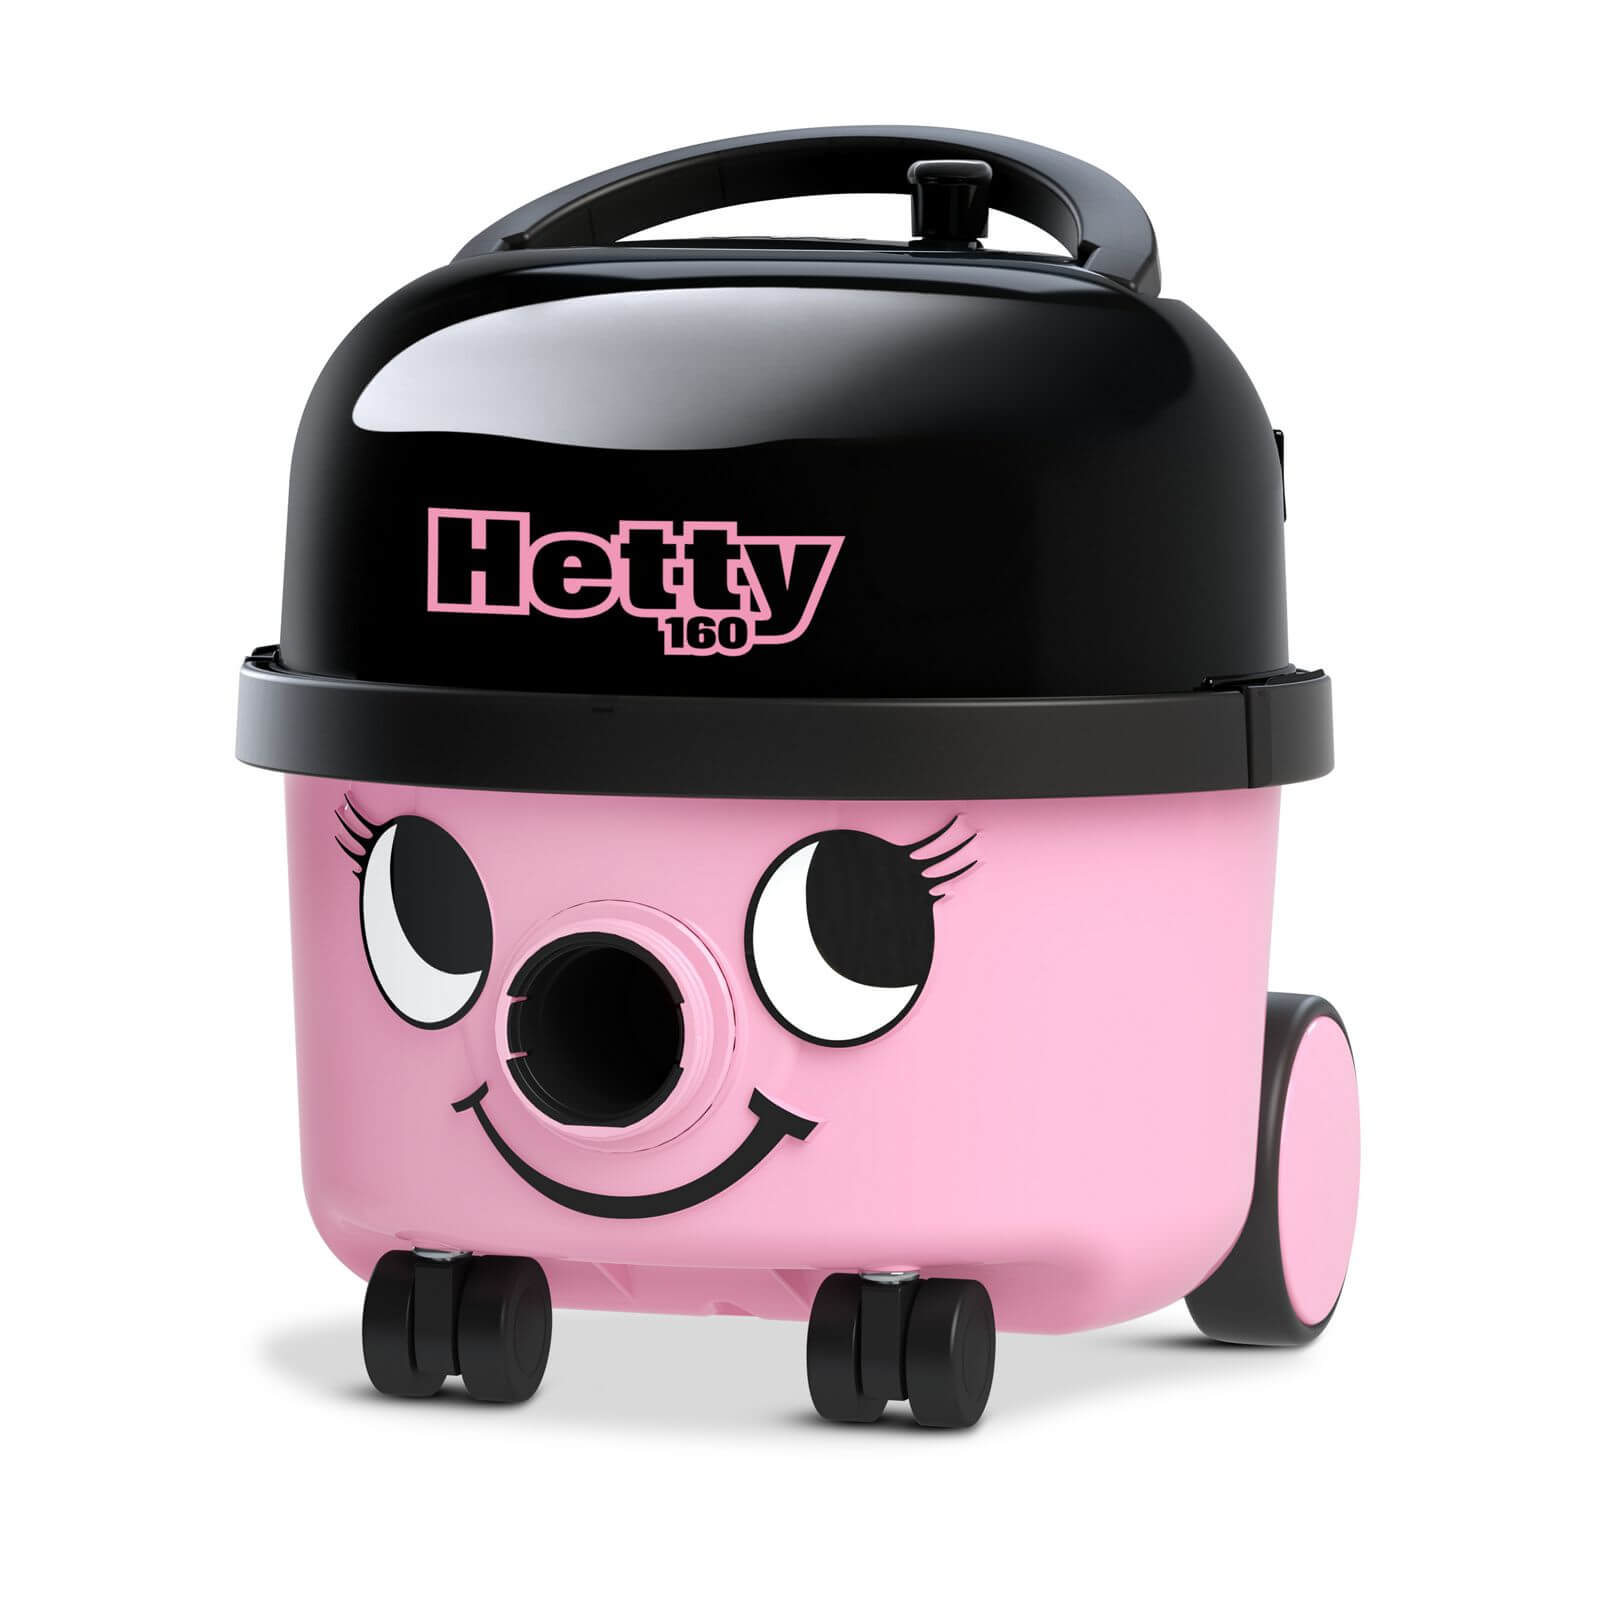 Hetty Eco HET160-11 Vacuum Cleaner